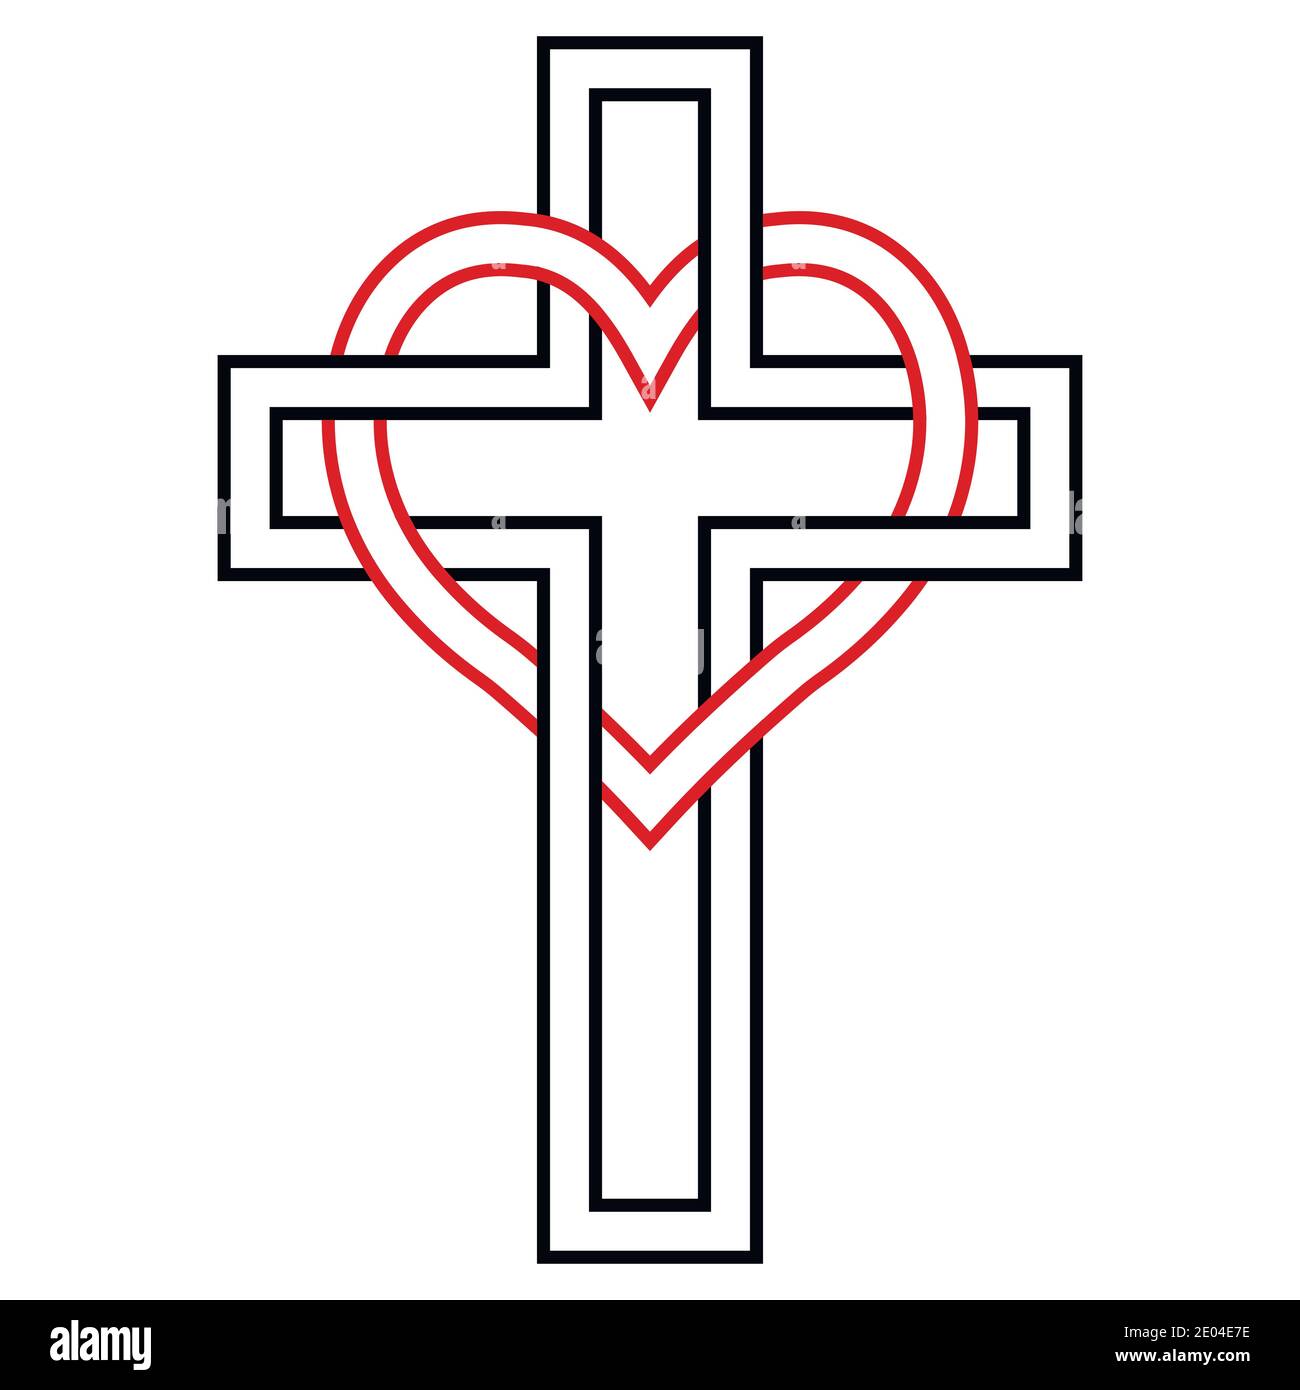 Verflechtung von Herz und christlichem Kreuz, Vektor-Symbol des Glaubens und der Liebe zu Gott. Christliches Symbol Stock Vektor